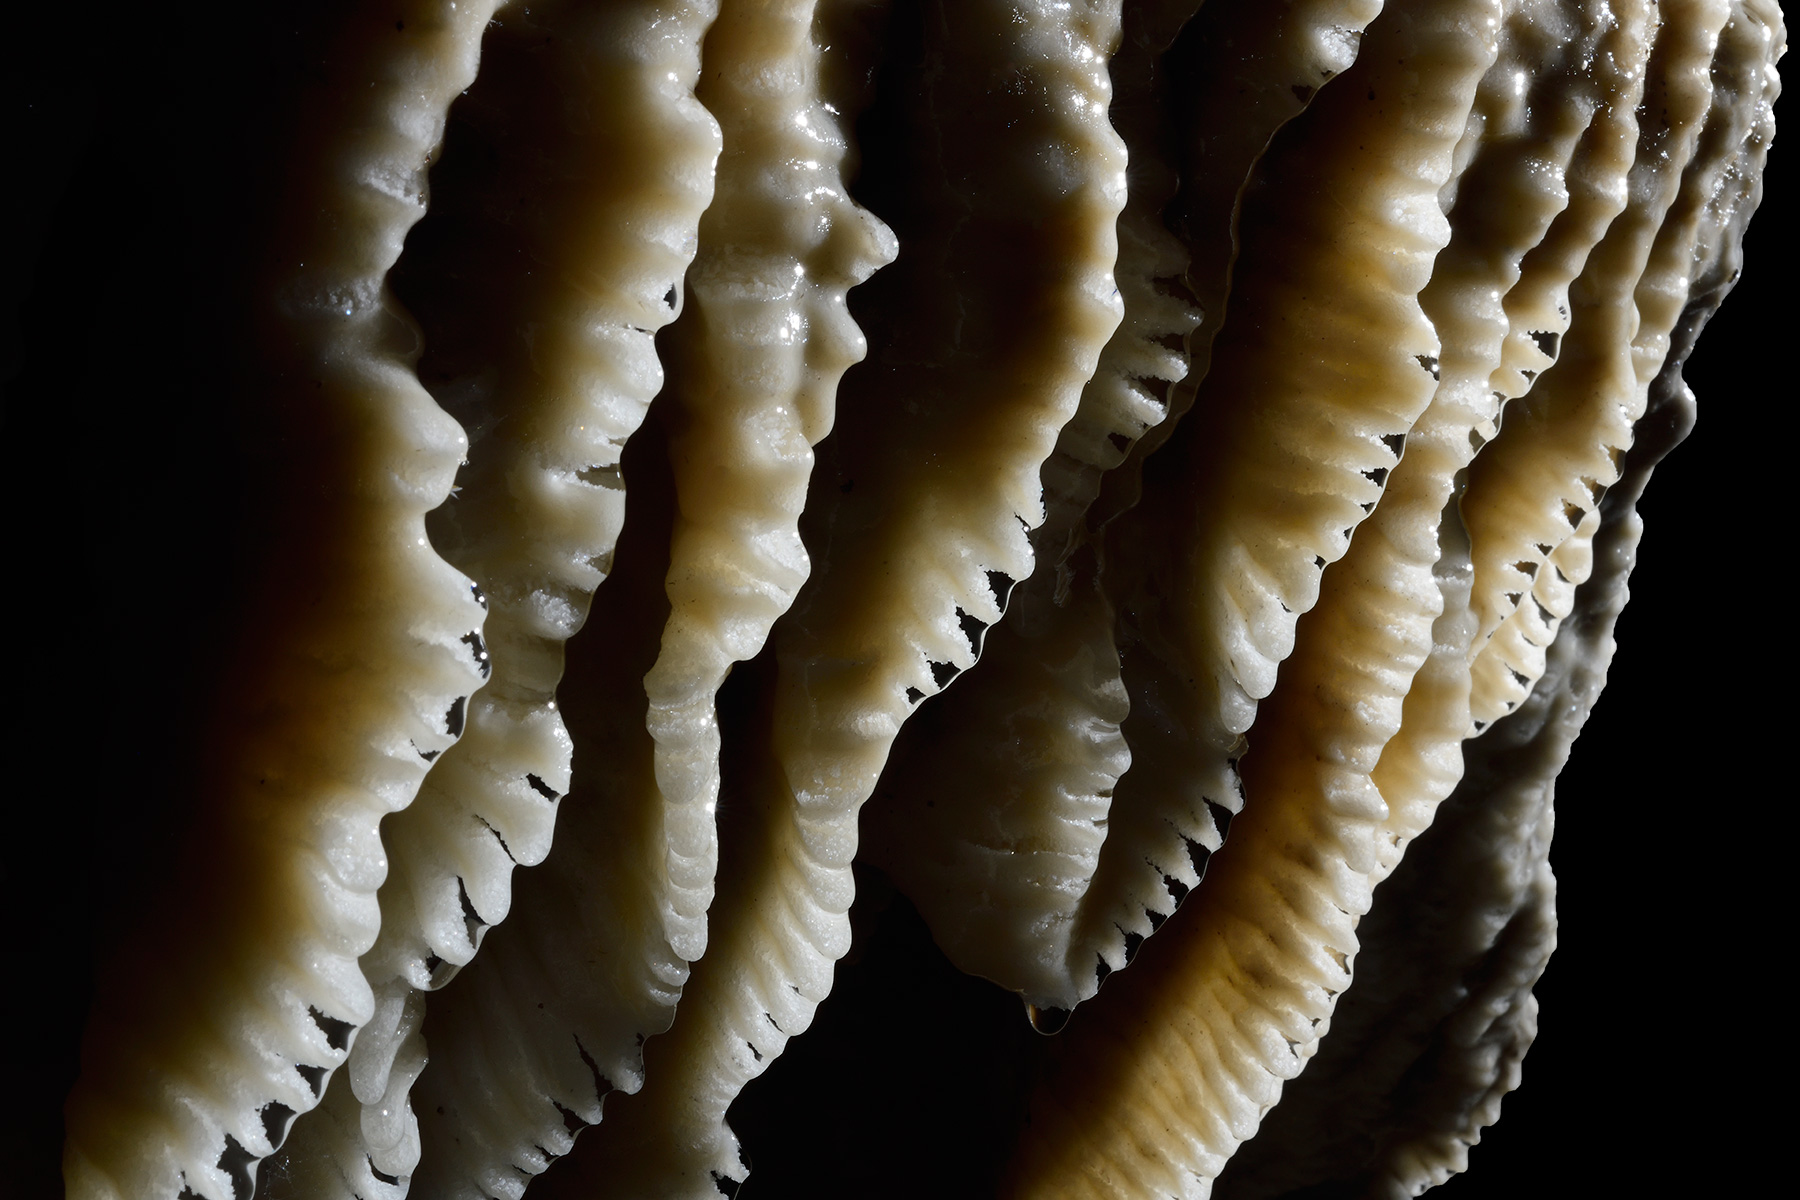 Grotte de Han (partie touristique) - - détail des bords dentelés d'une "méduse" blanche